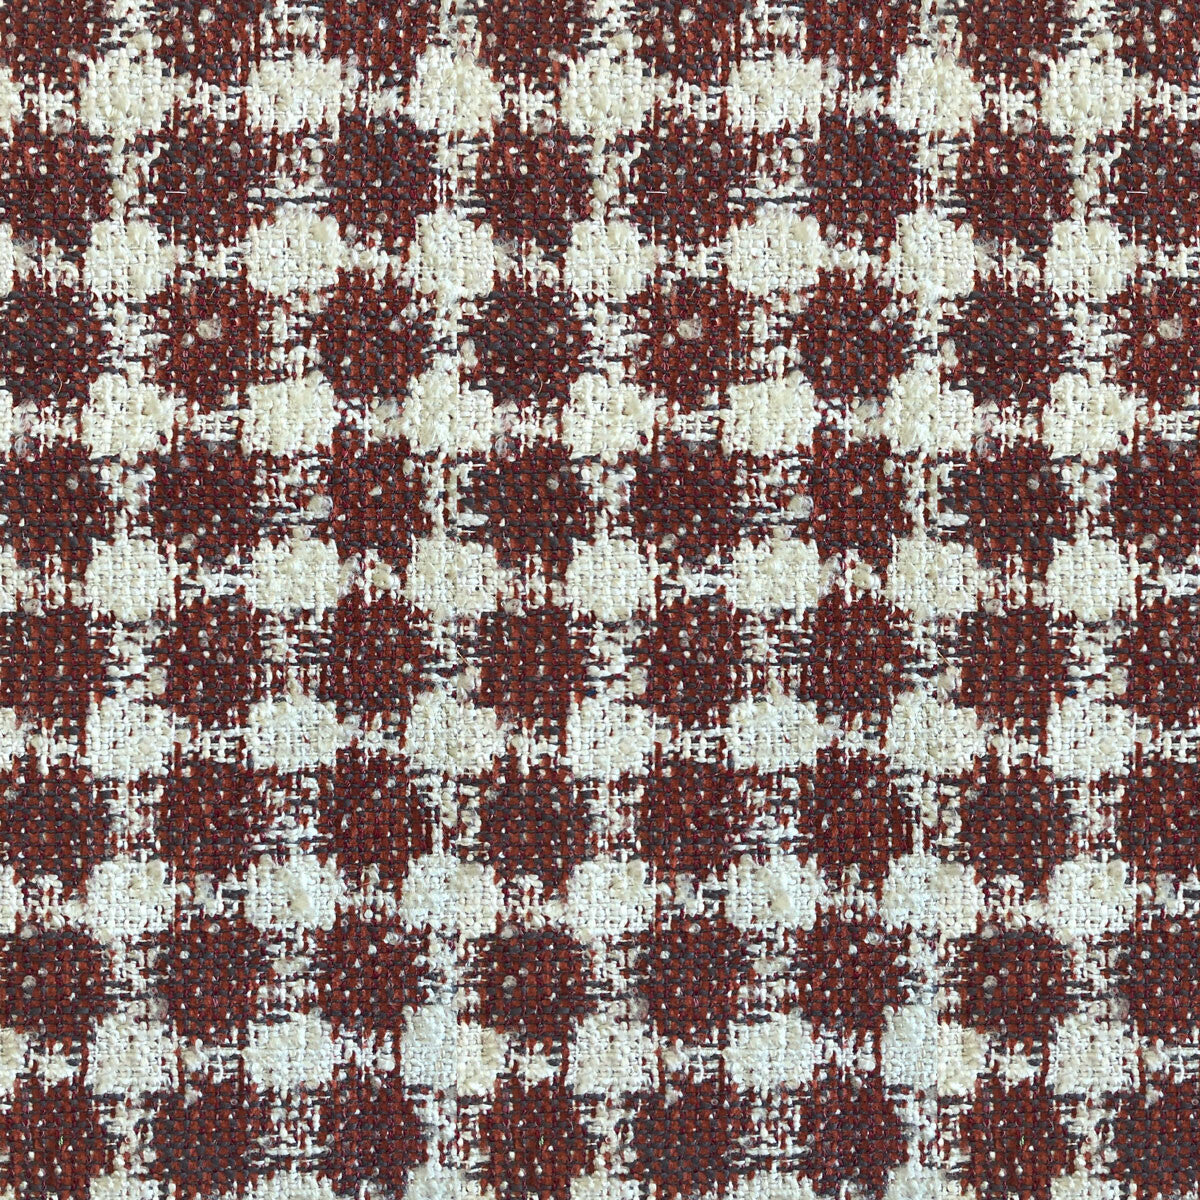 Predraza fabric in rojo color - pattern LCT1050.003.0 - by Gaston y Daniela in the Lorenzo Castillo VI collection